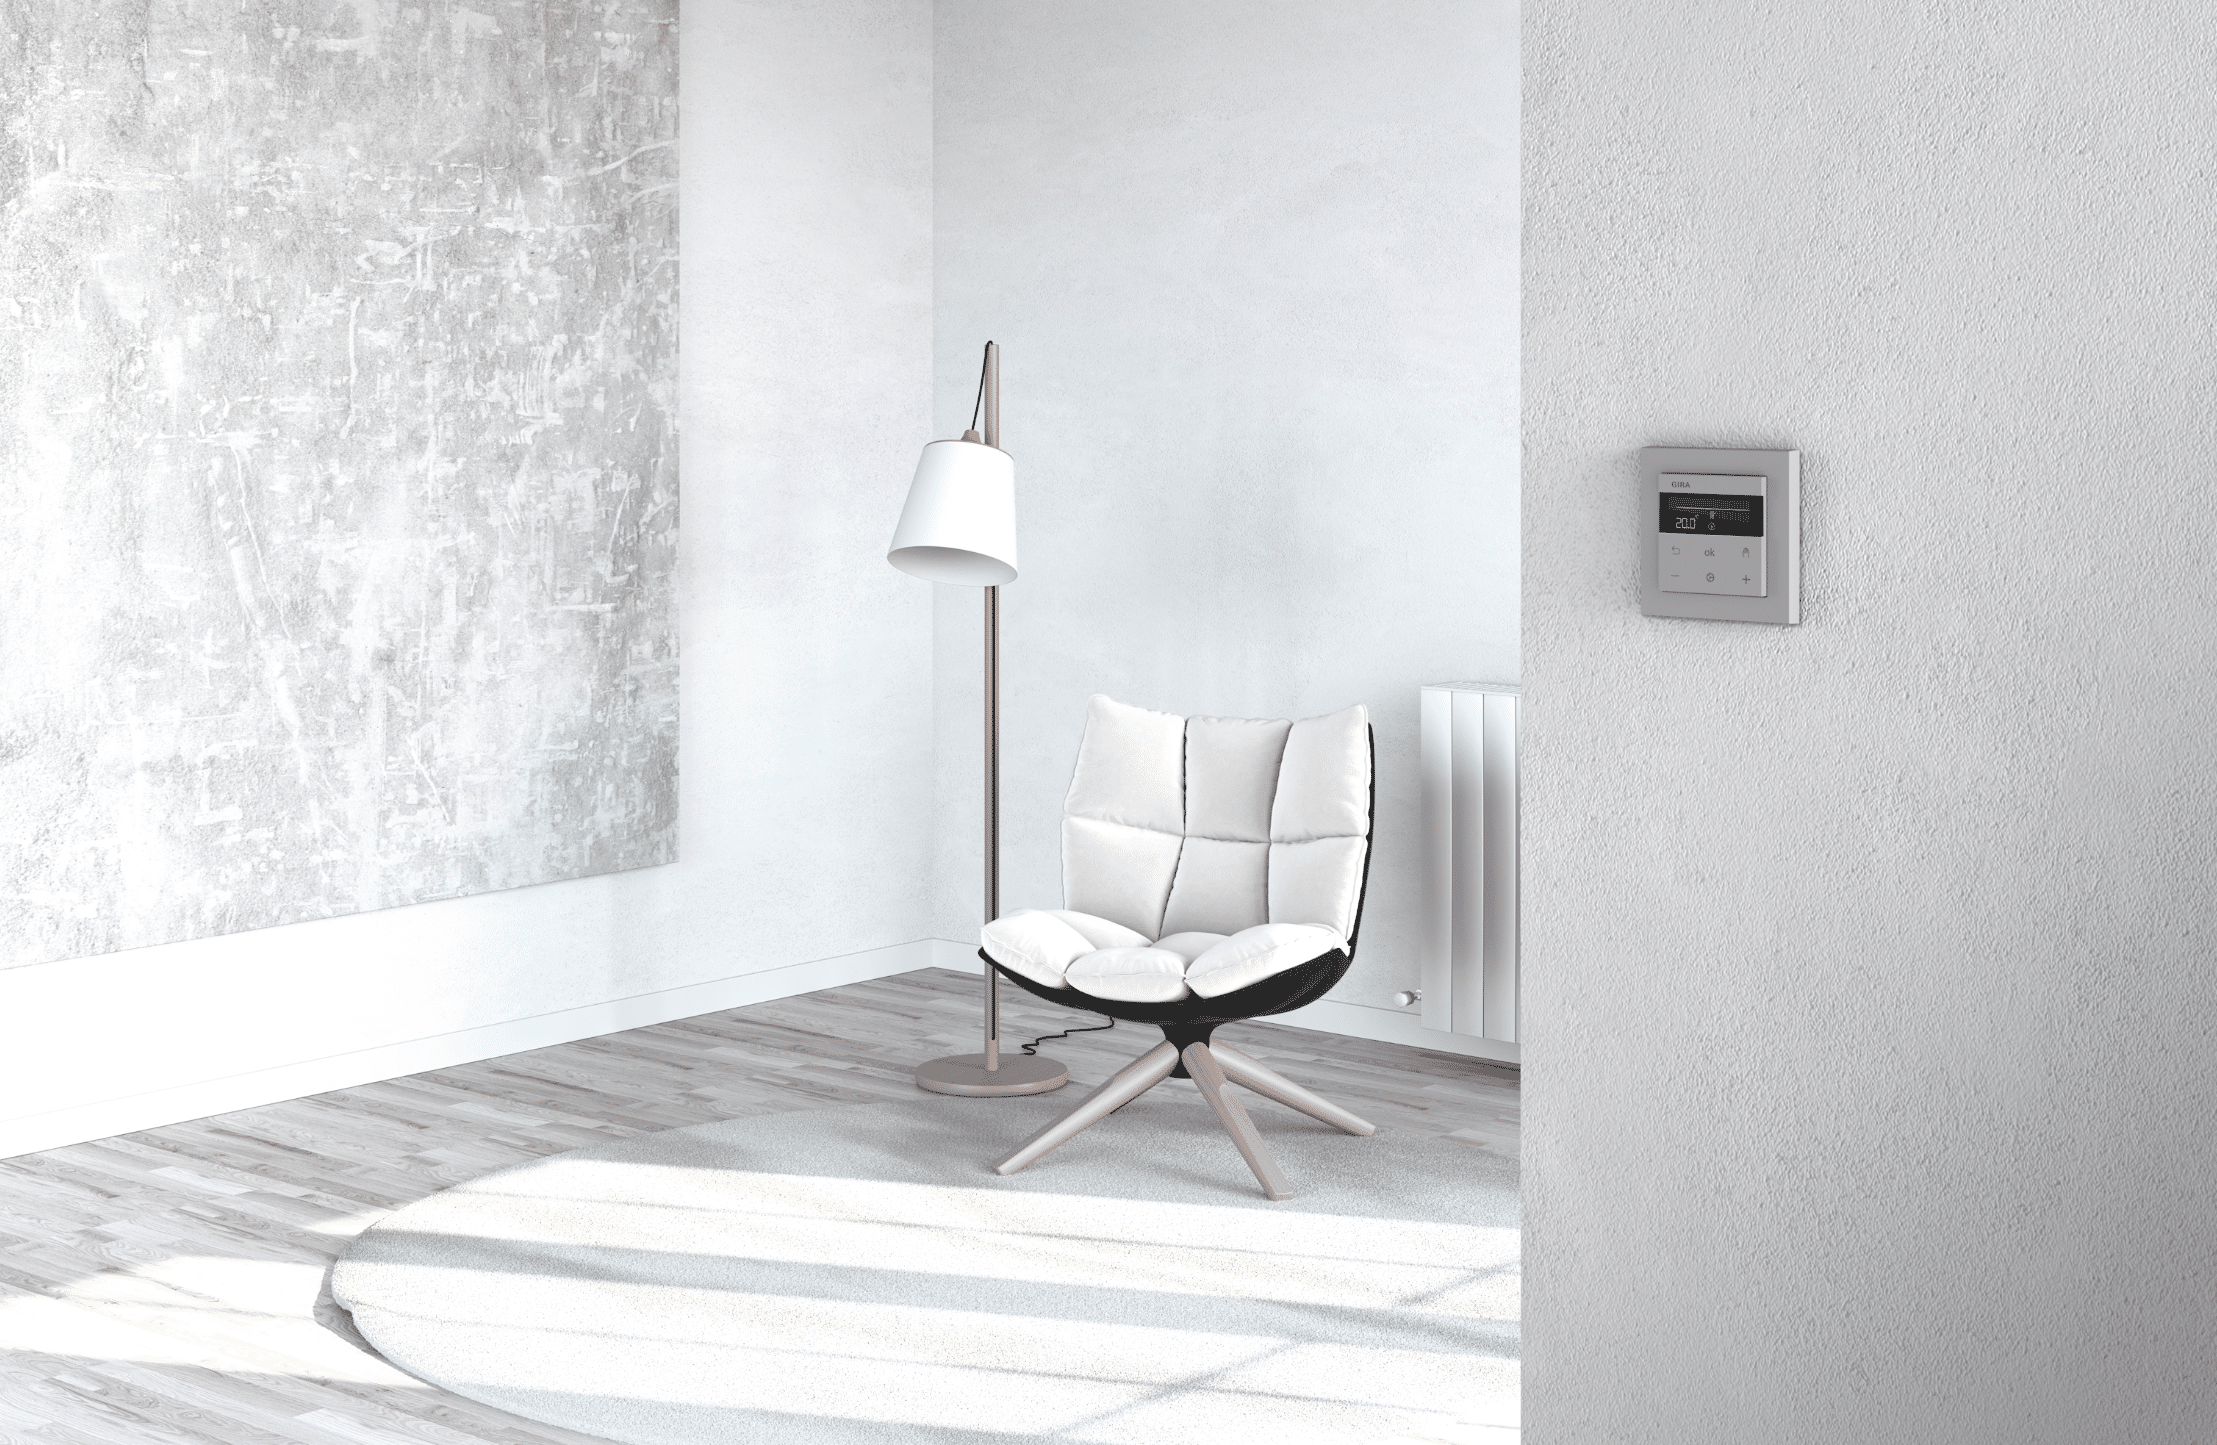 Gira zeigt einen Raum mit Stuhl und einen smarten Regler für die Temperatur in grau.